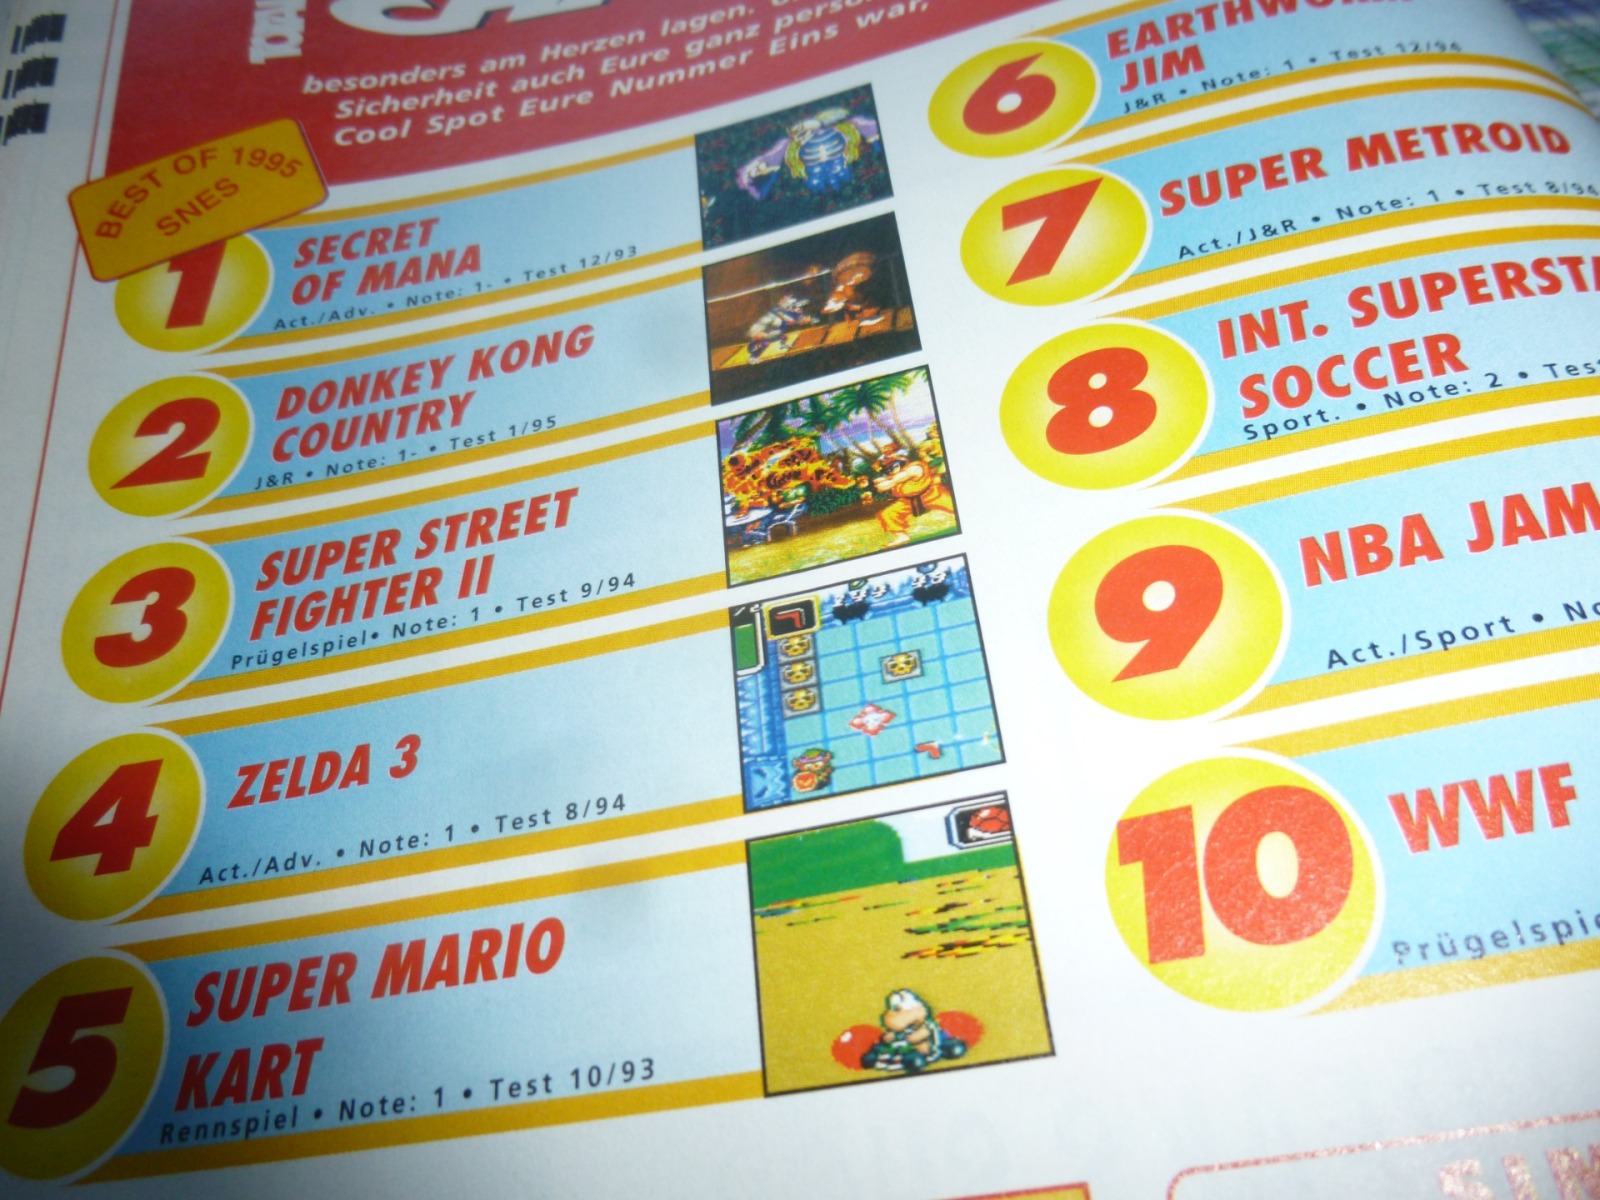 TOTAL Das unabhängige Magazin - 100% Nintendo - Ausgabe 2/96 1996 15